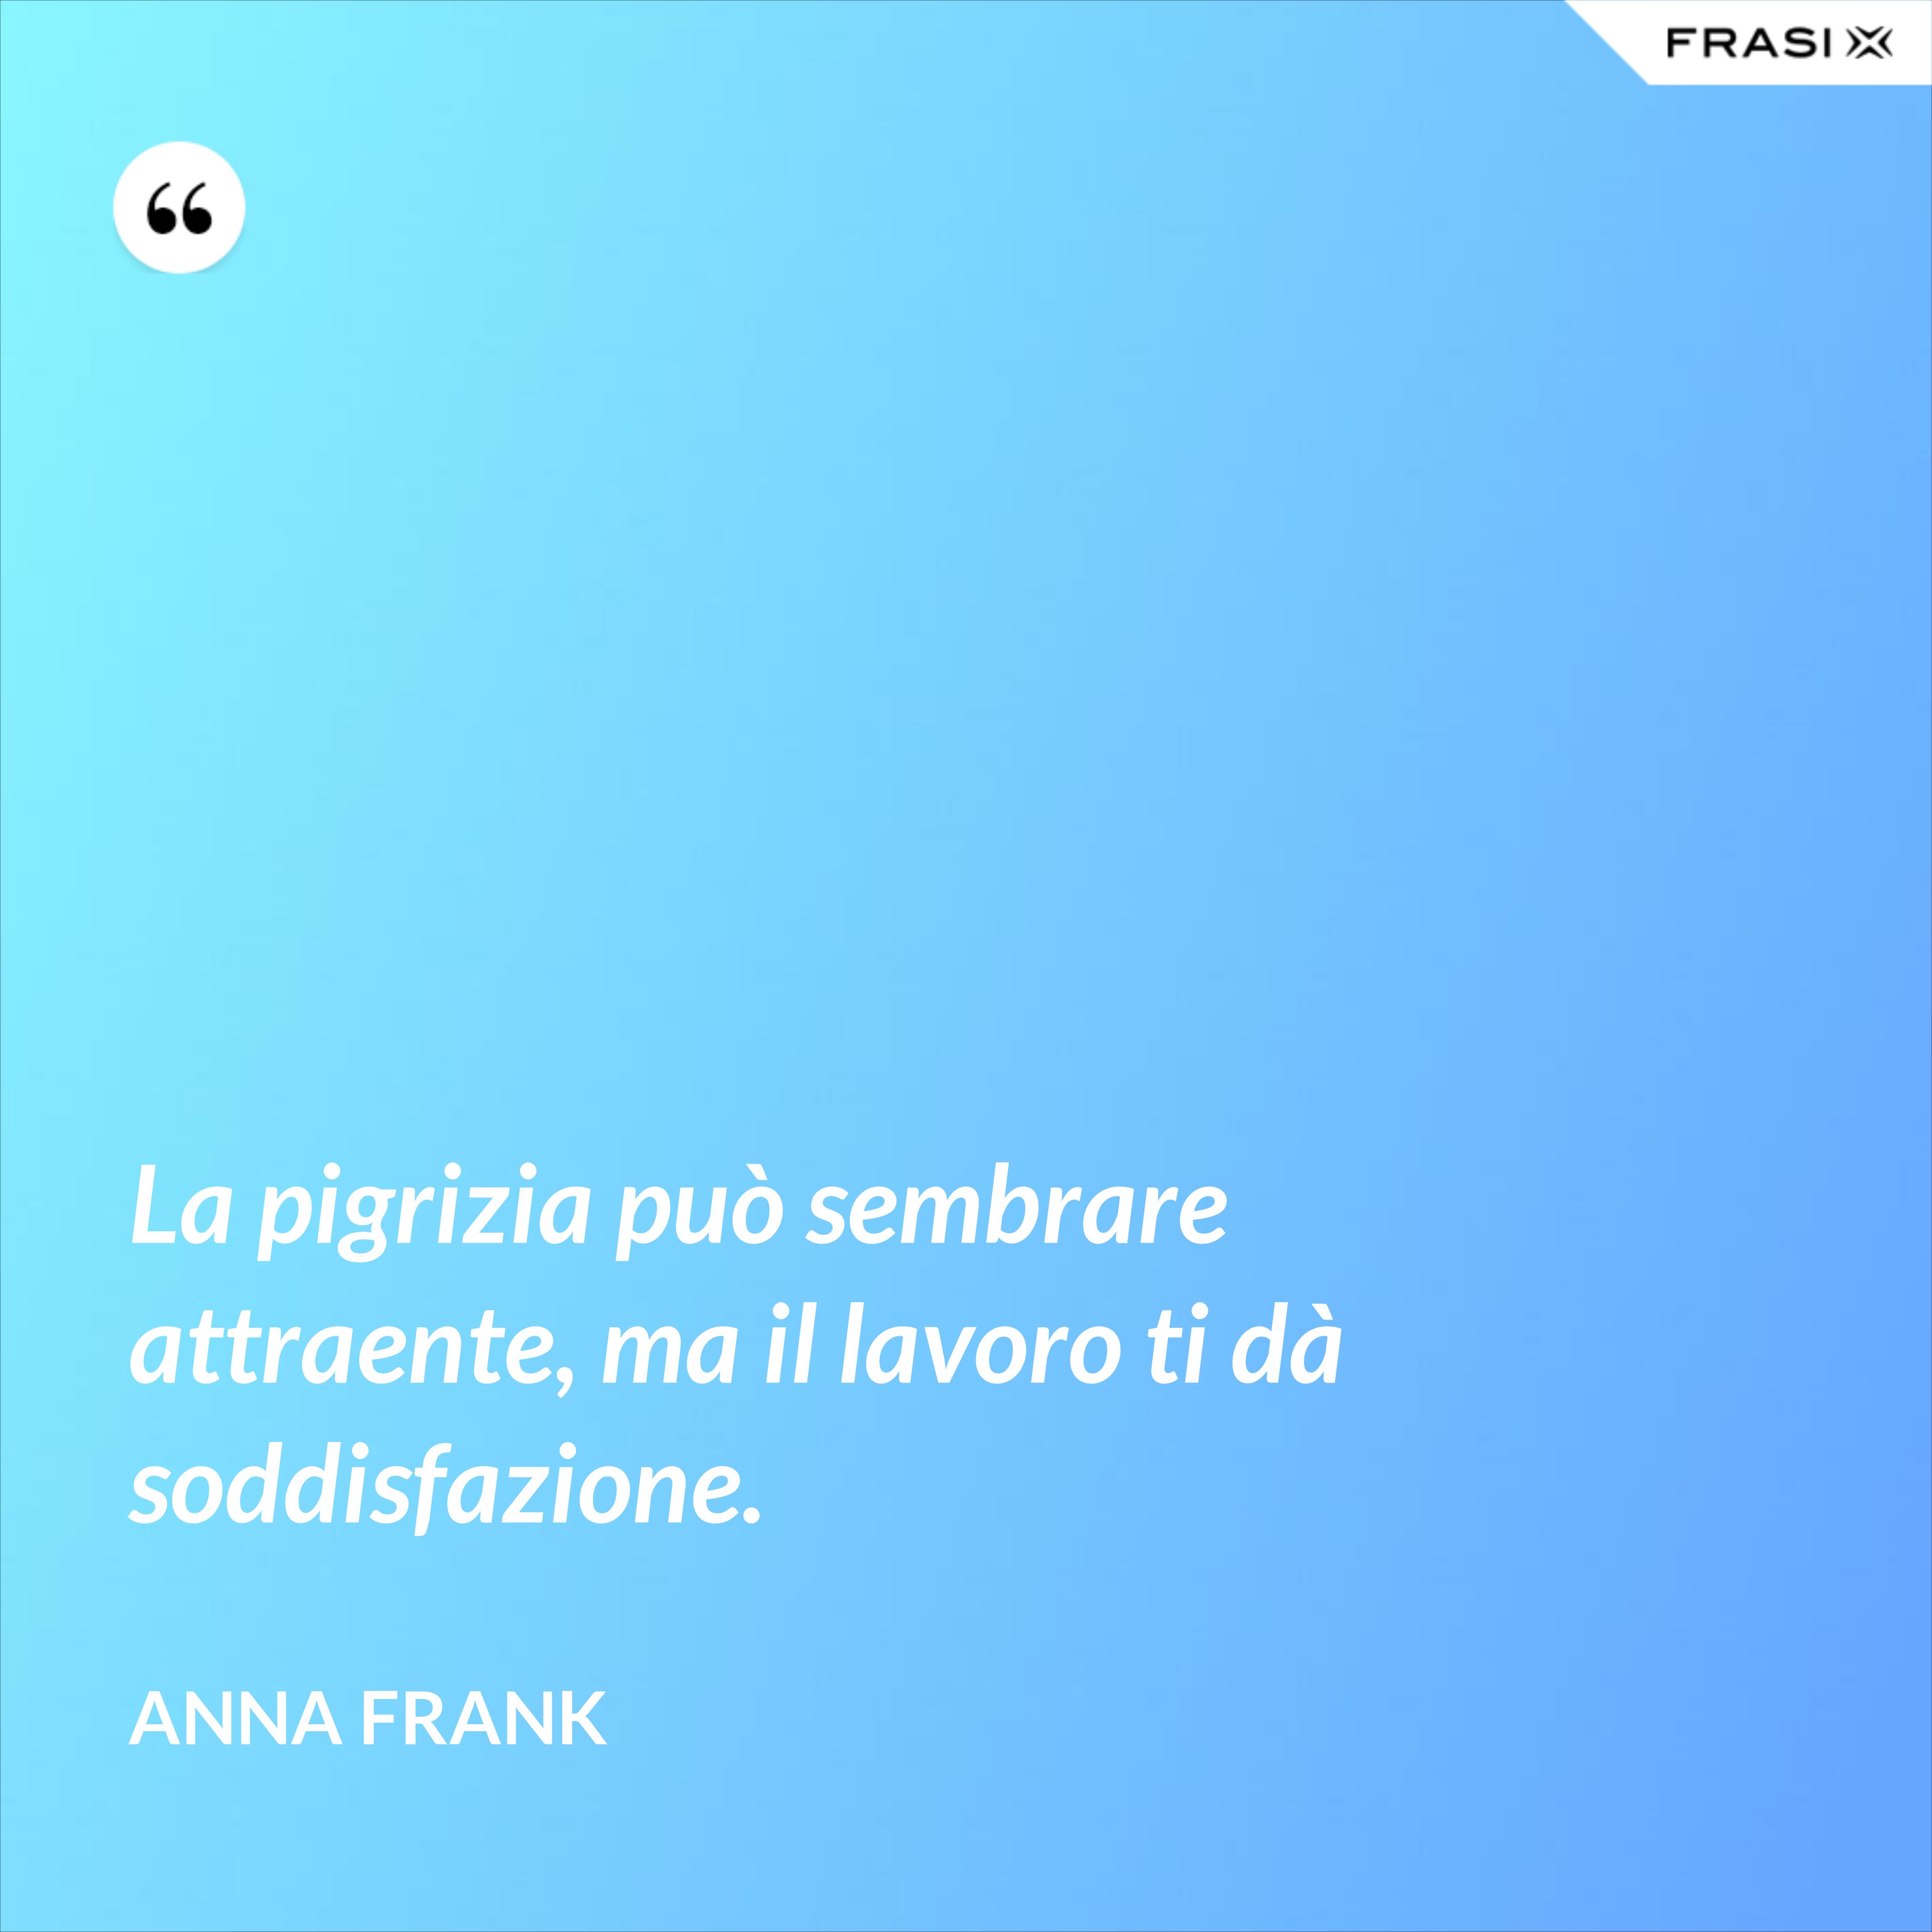 La pigrizia può sembrare attraente, ma il lavoro ti dà soddisfazione. - Anna Frank